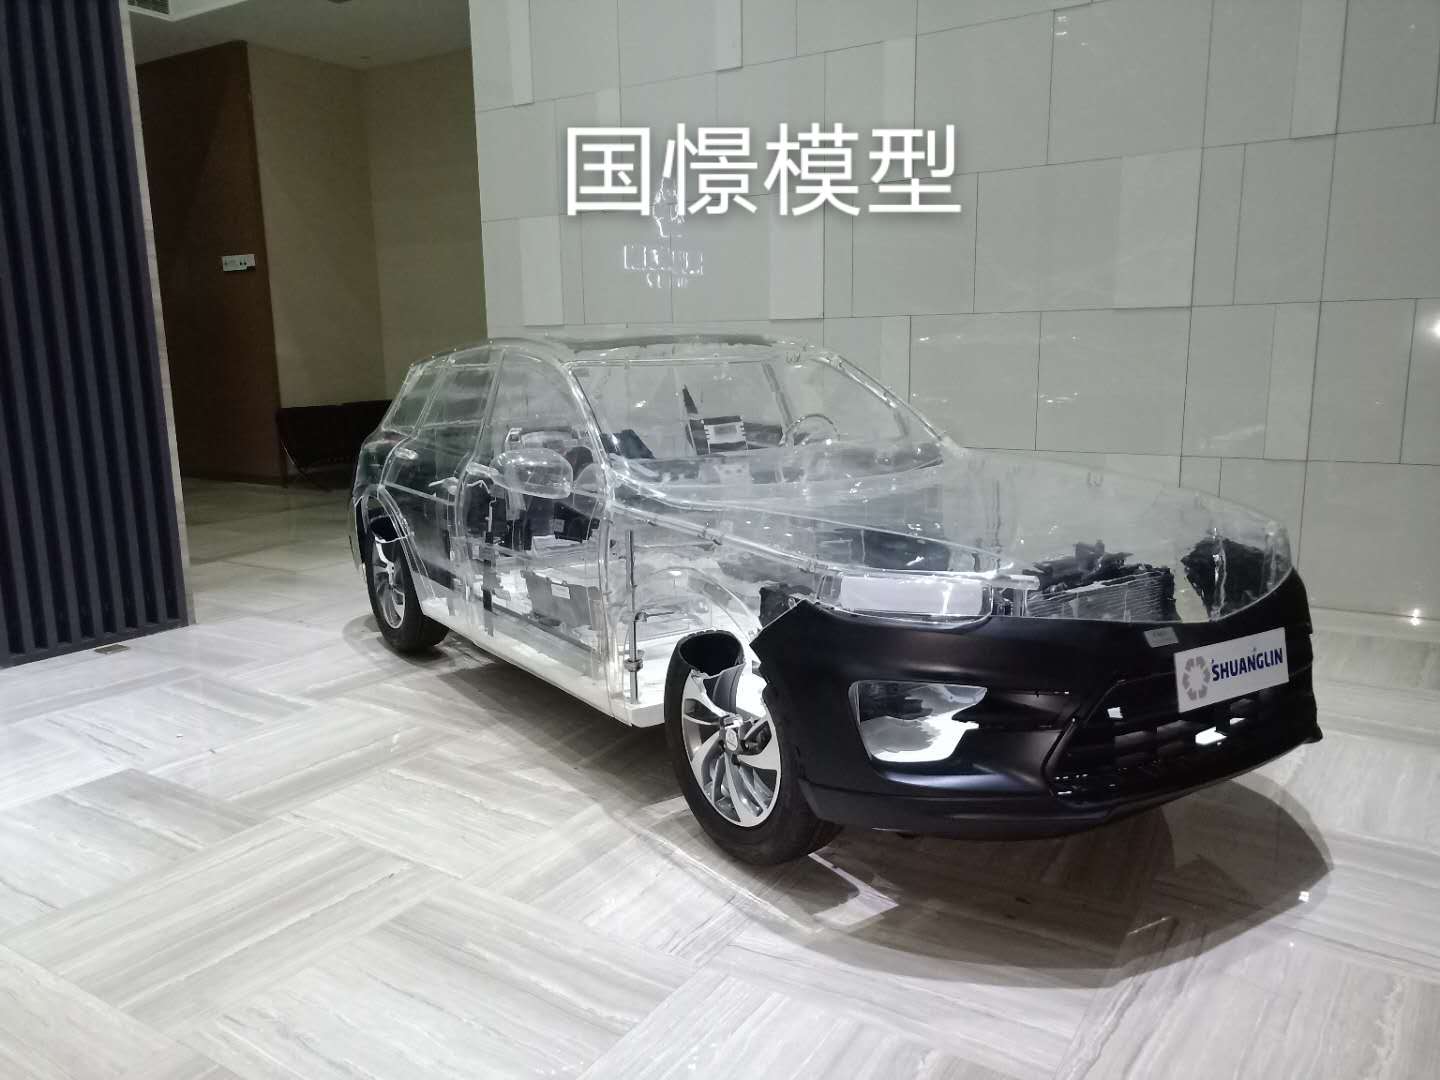 磁县透明车模型